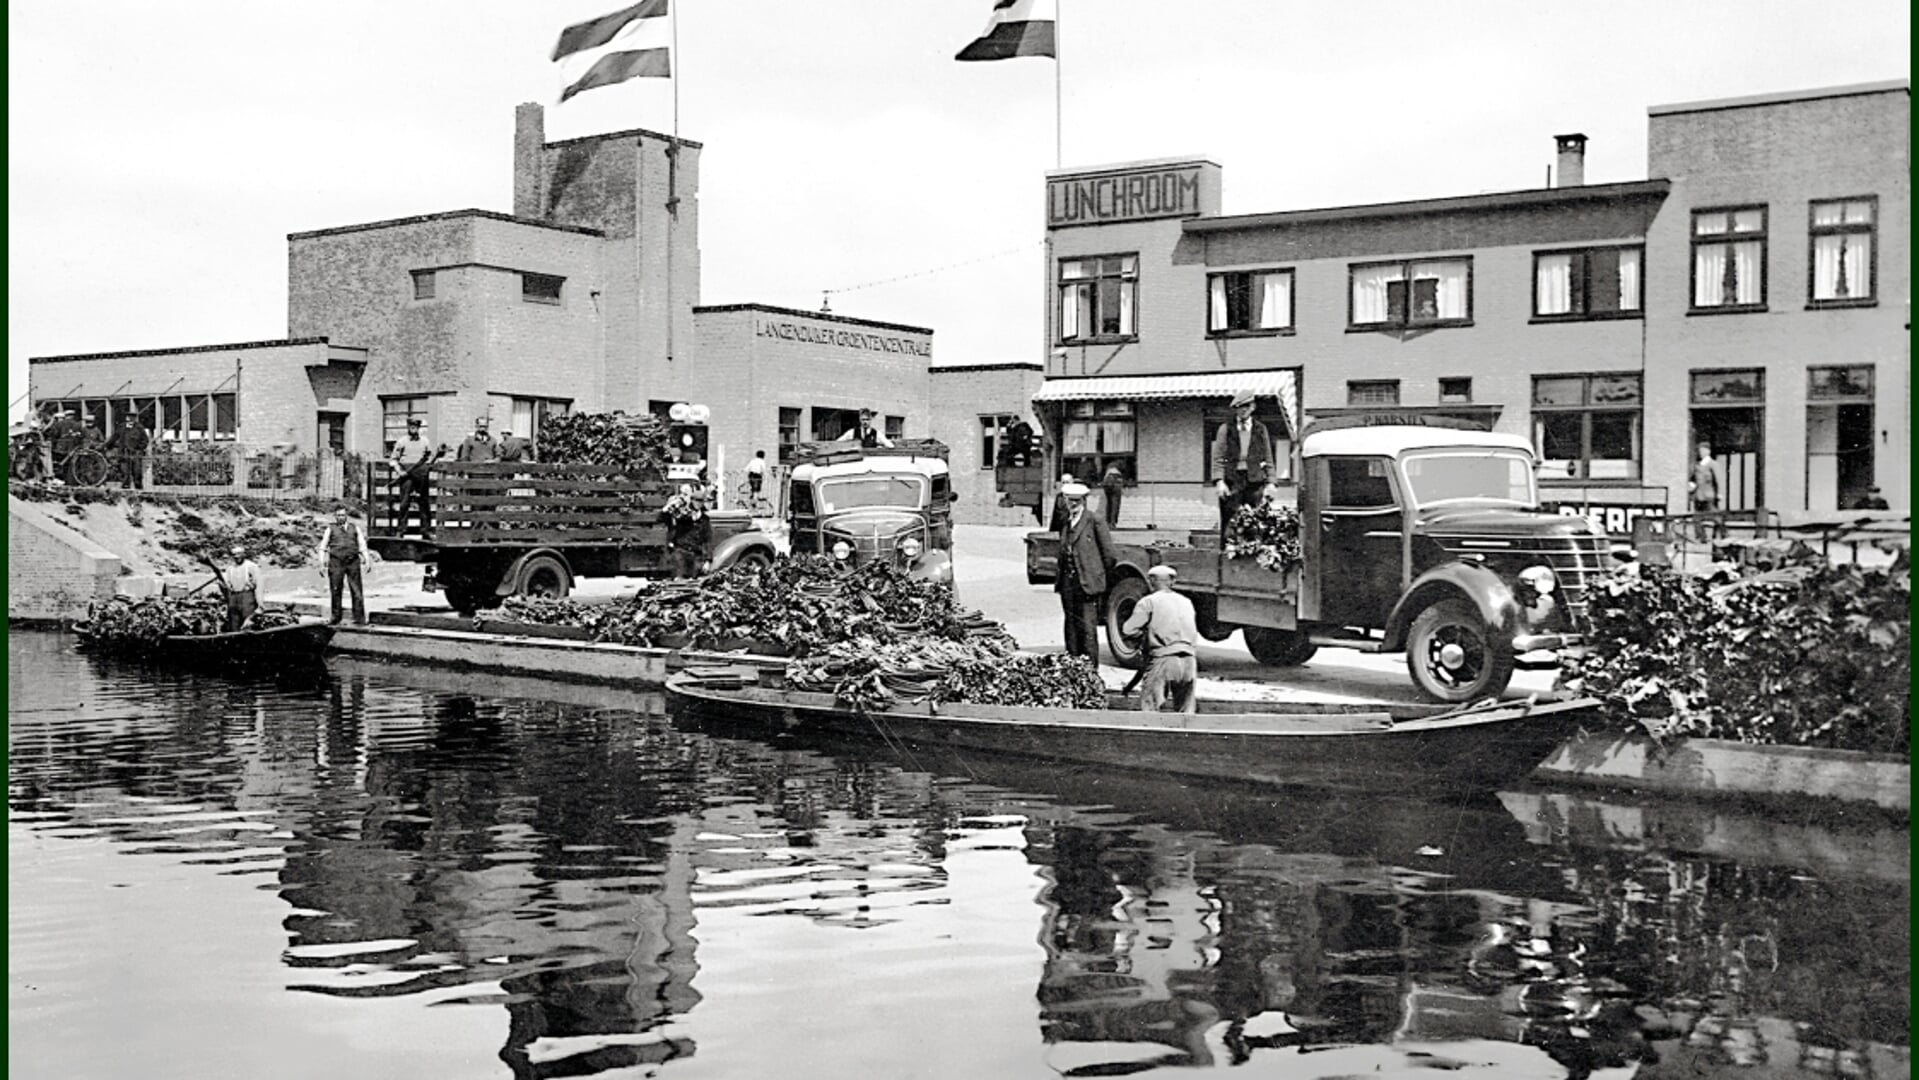 Overladen van groente bij het bakkershuis in Broek op Langedijk